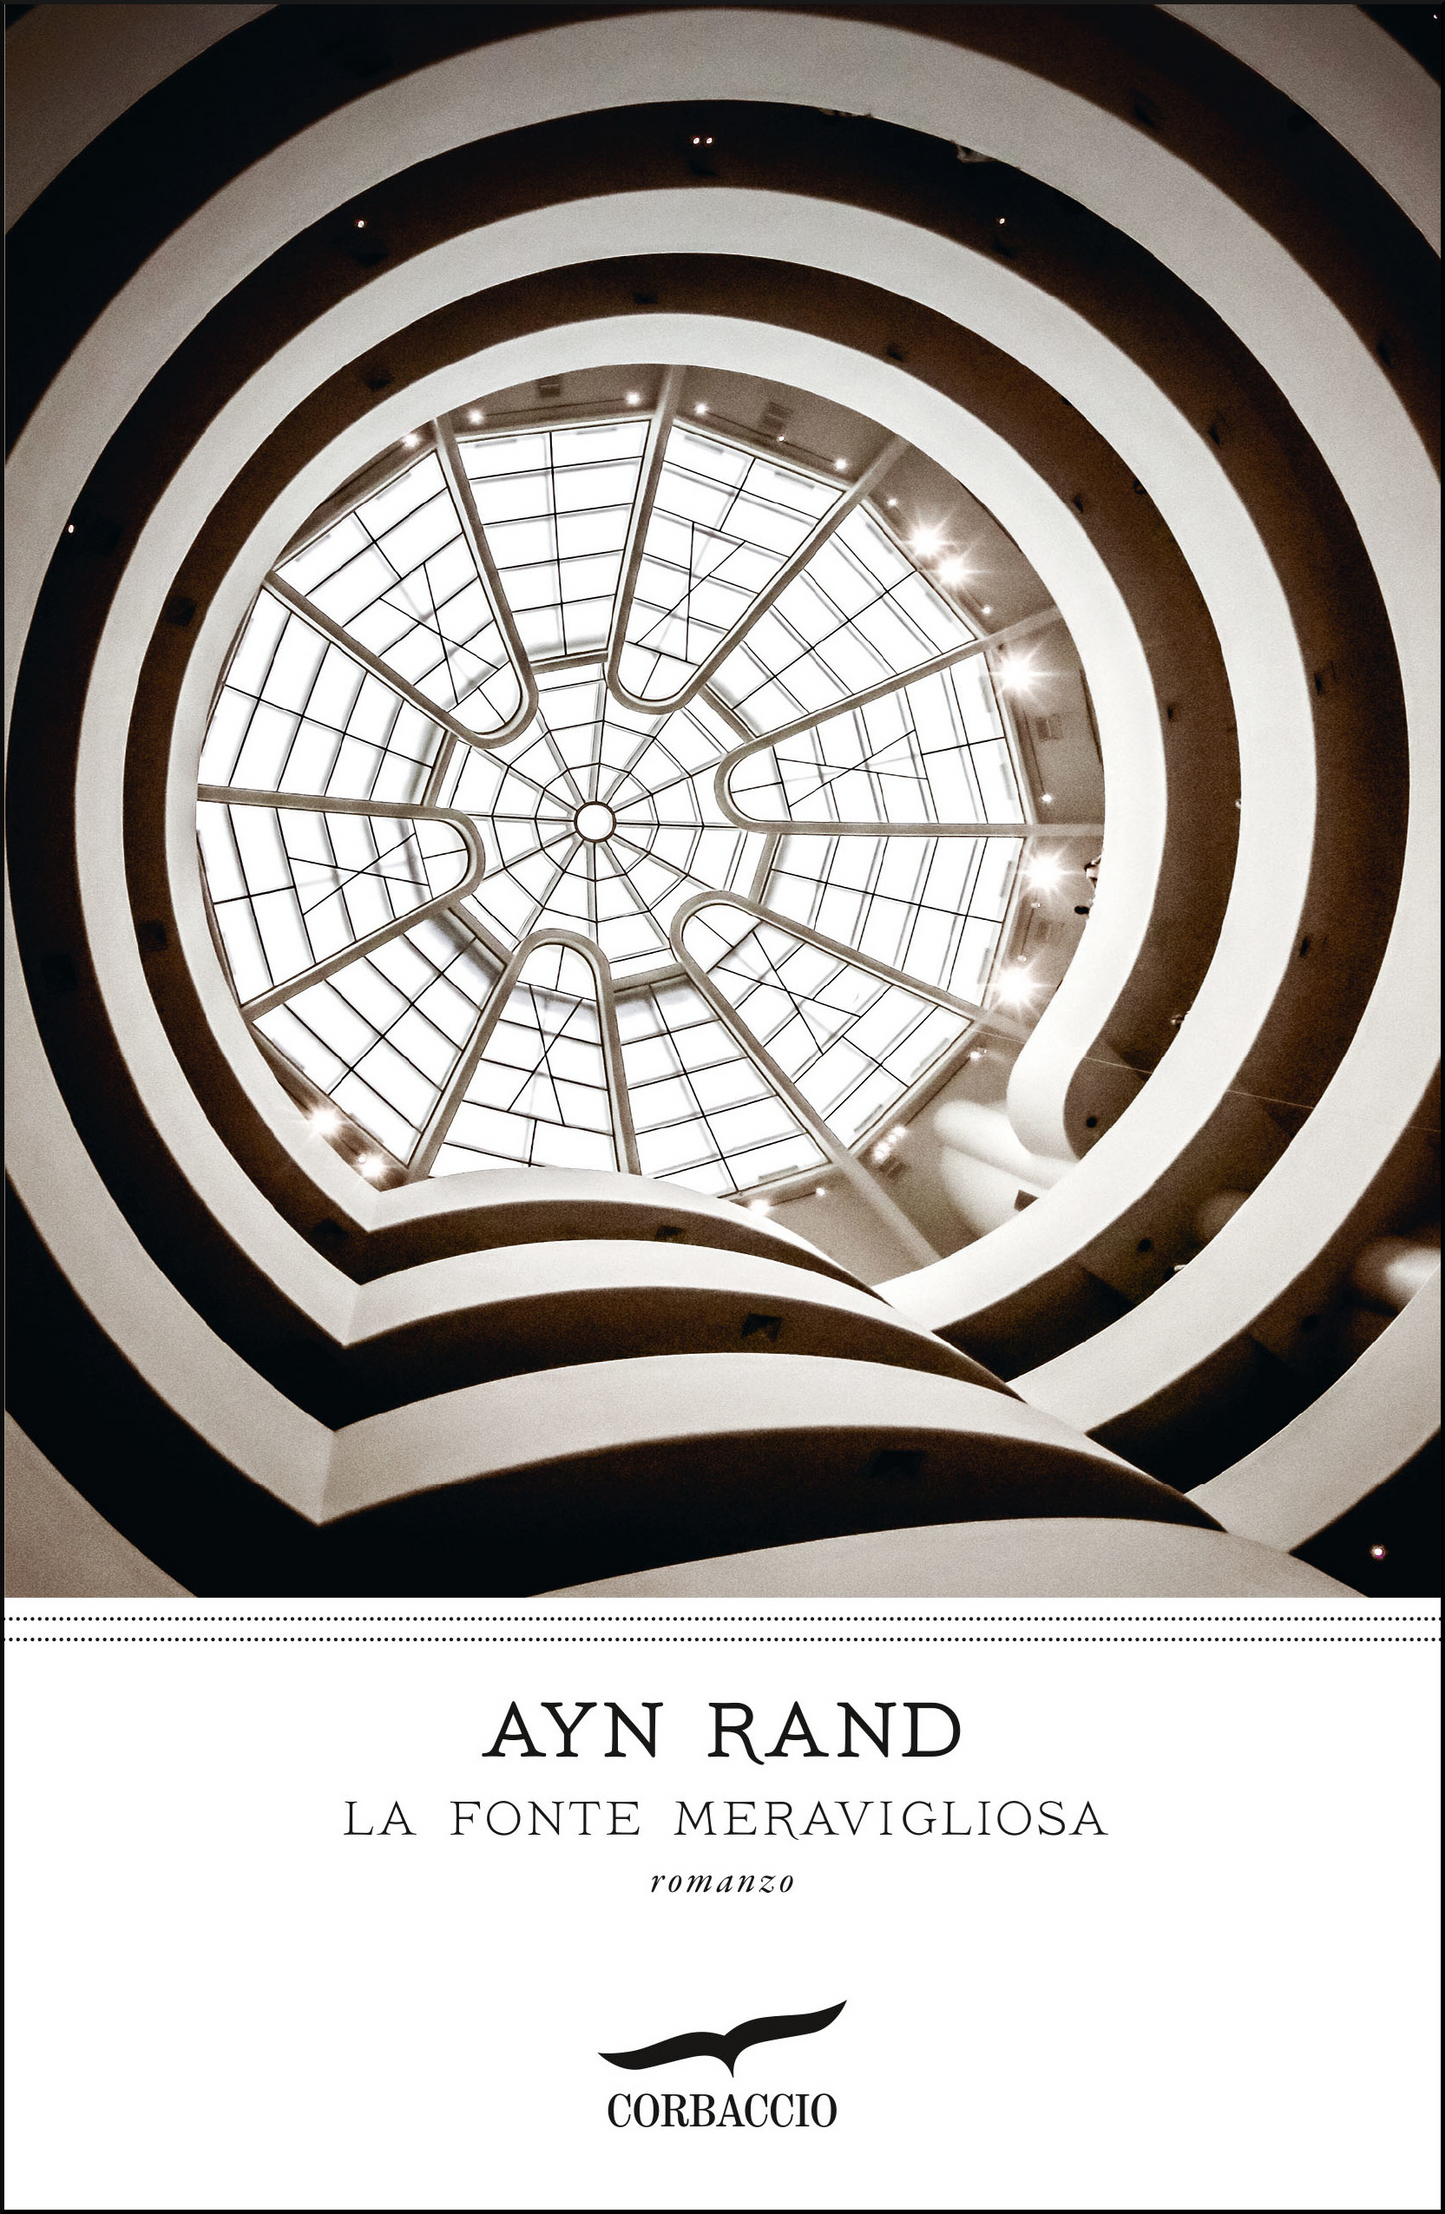 La fonte meravigliosa - Ayn Rand - Corbaccio